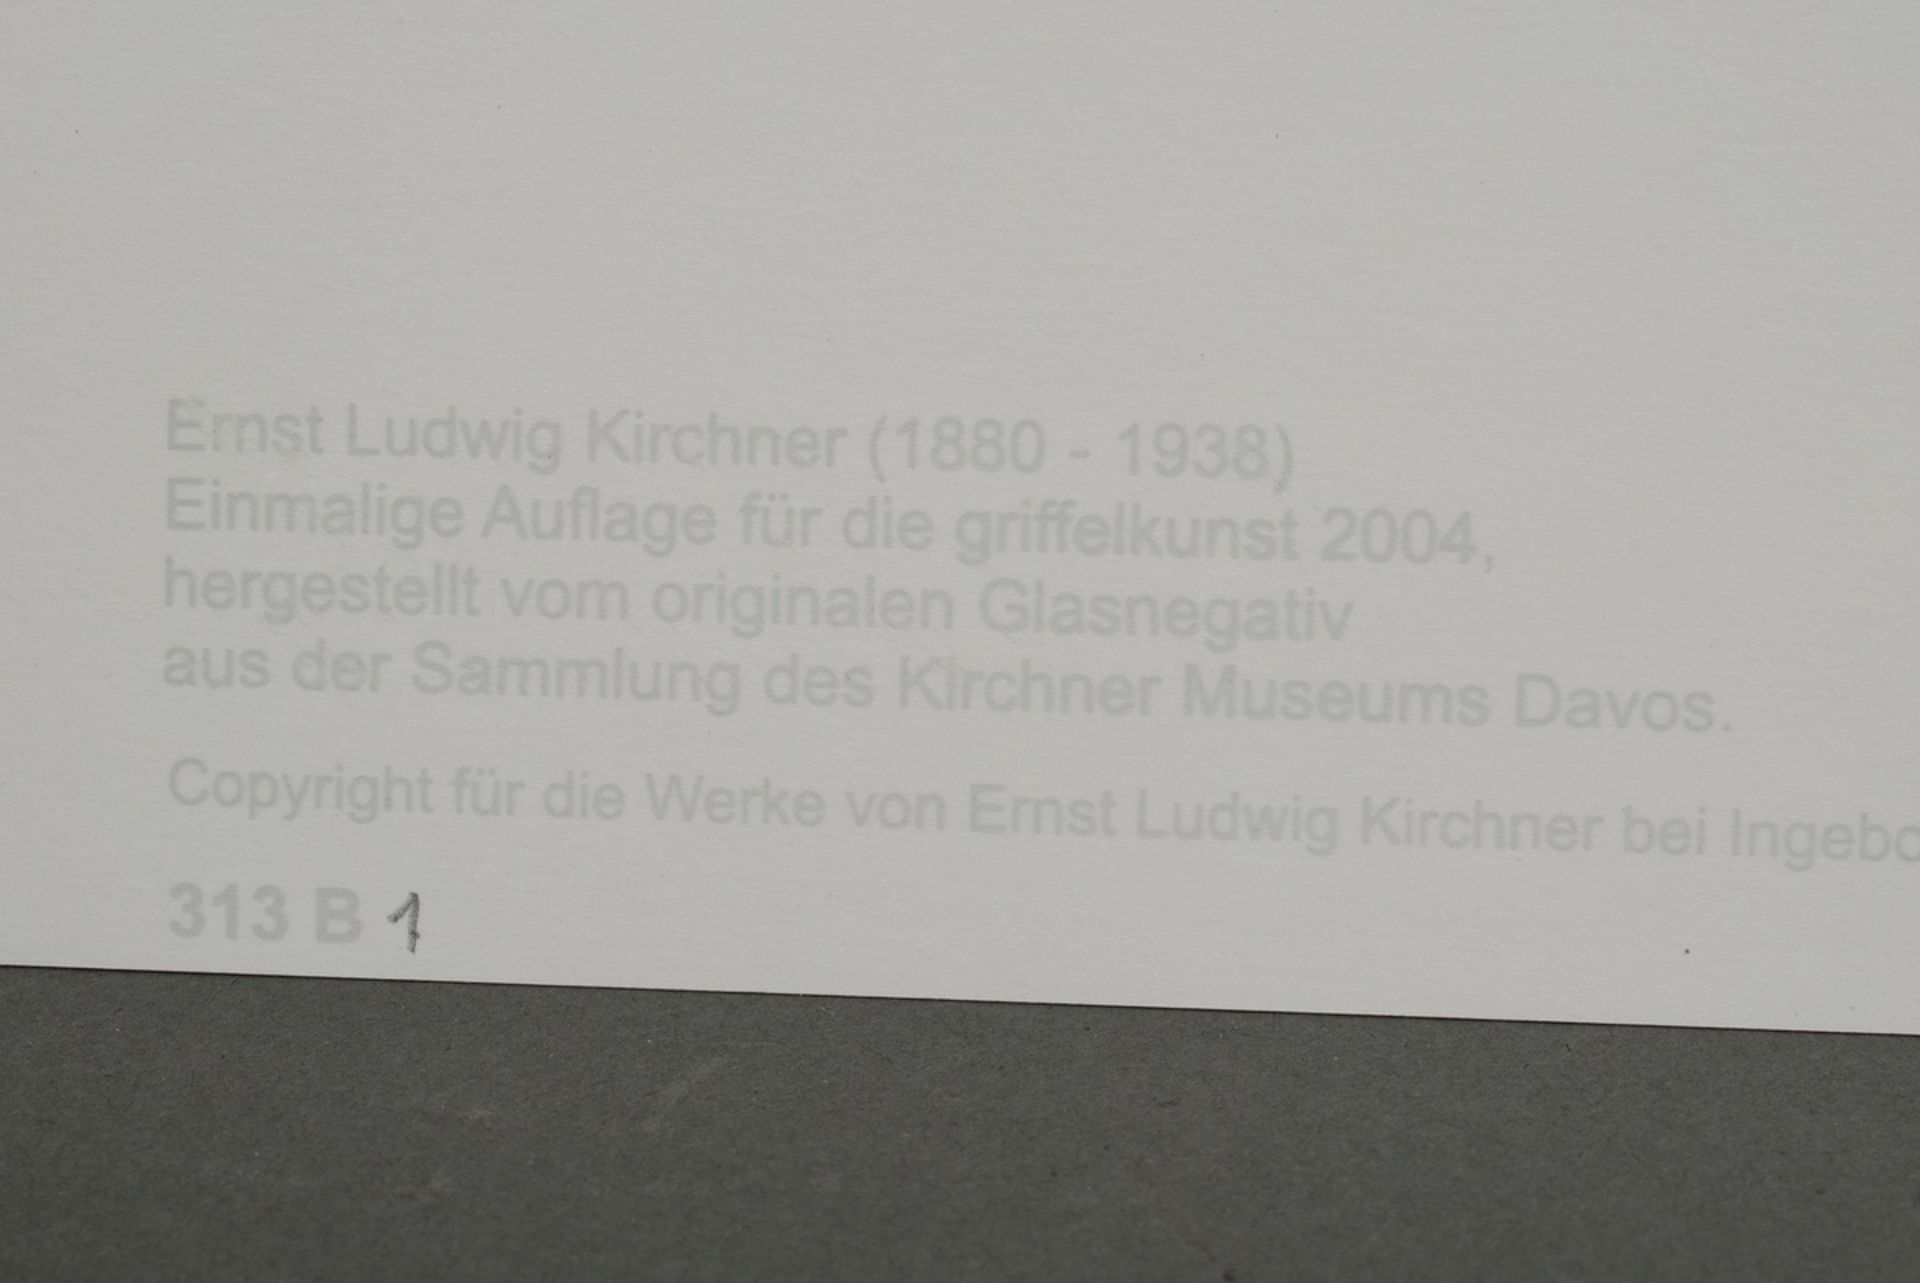 Kirchner, Ernst Ludwig (1880-1938) "Gustav Schiefler (1857-1935)" 1927/2004, photograph, Griffelkun - Image 3 of 3